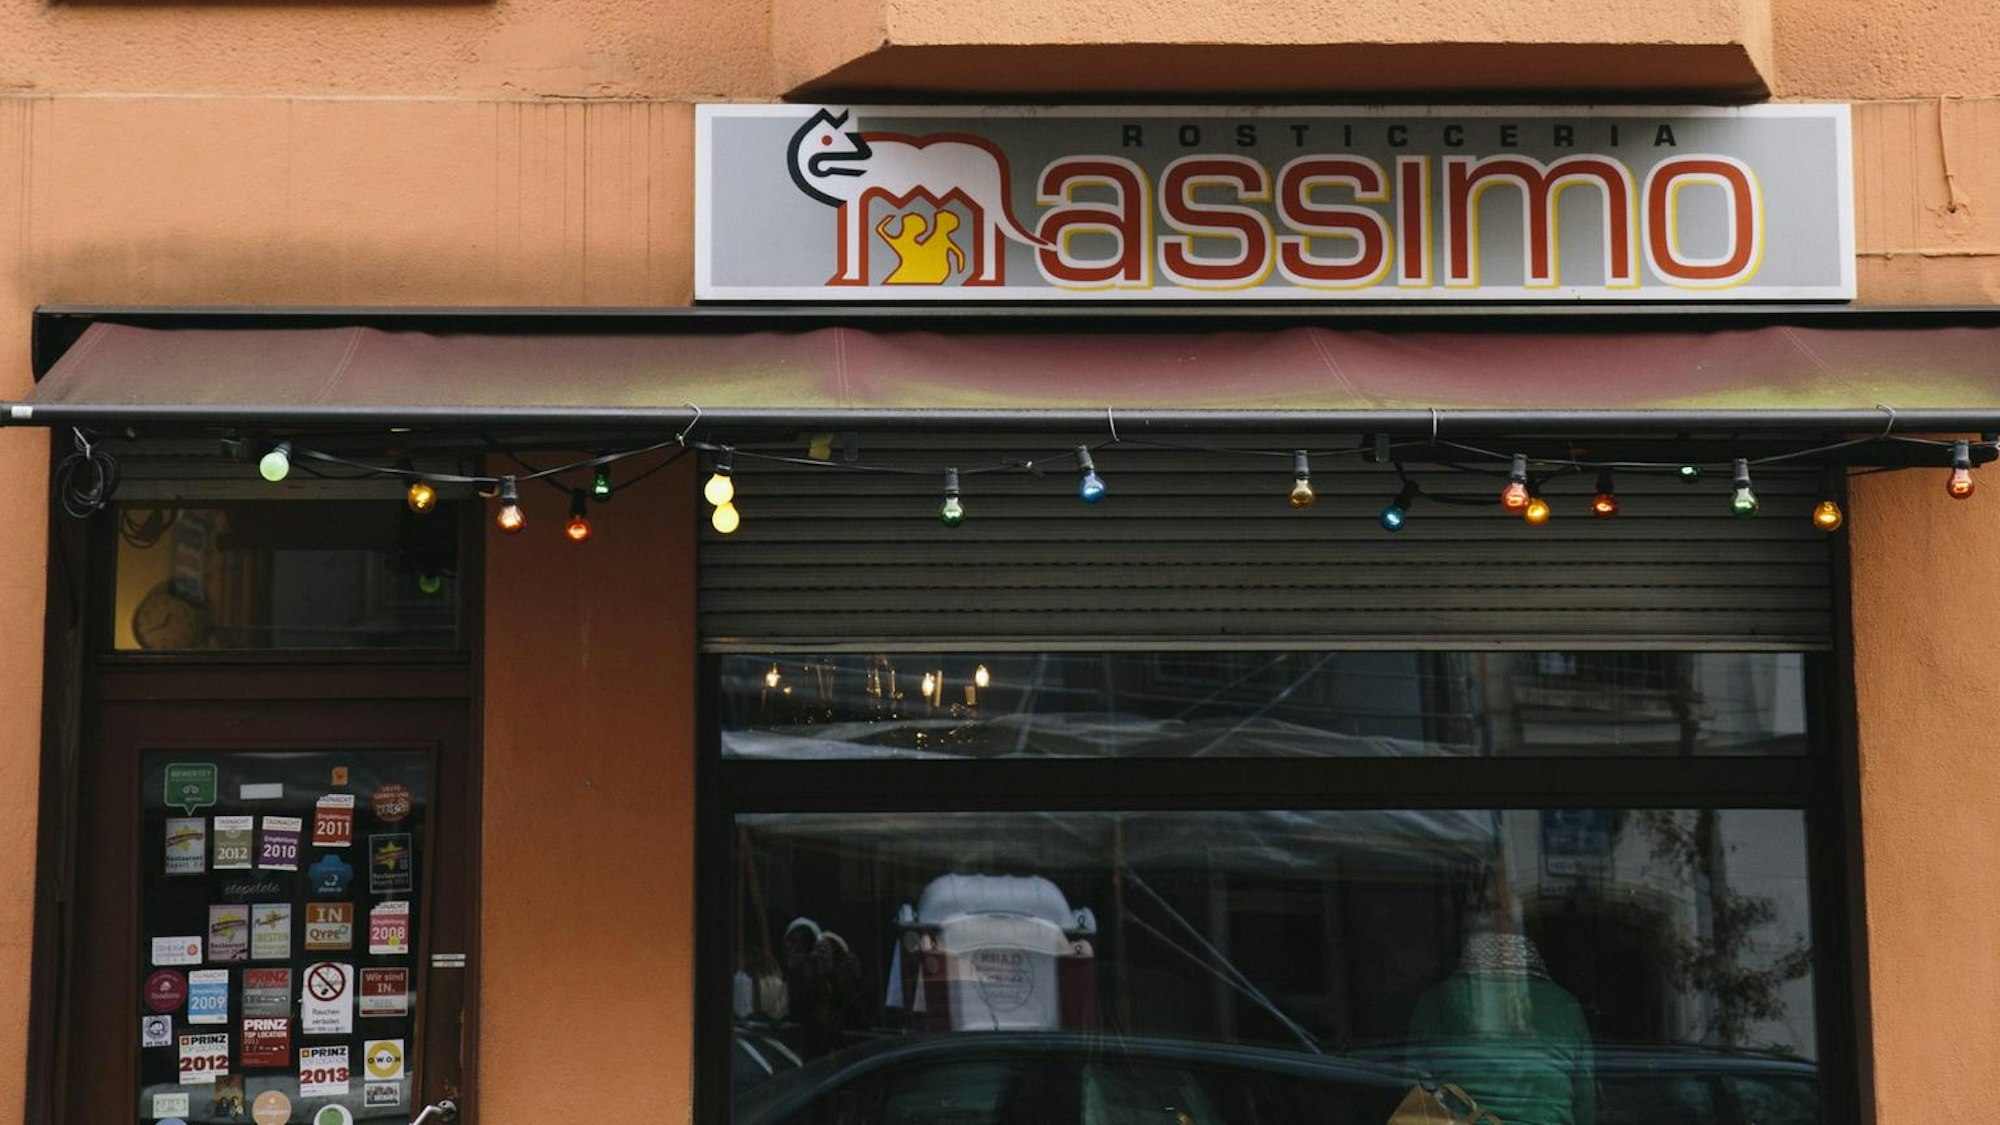 Das Restaurant Massimo in der Alteburger Straße